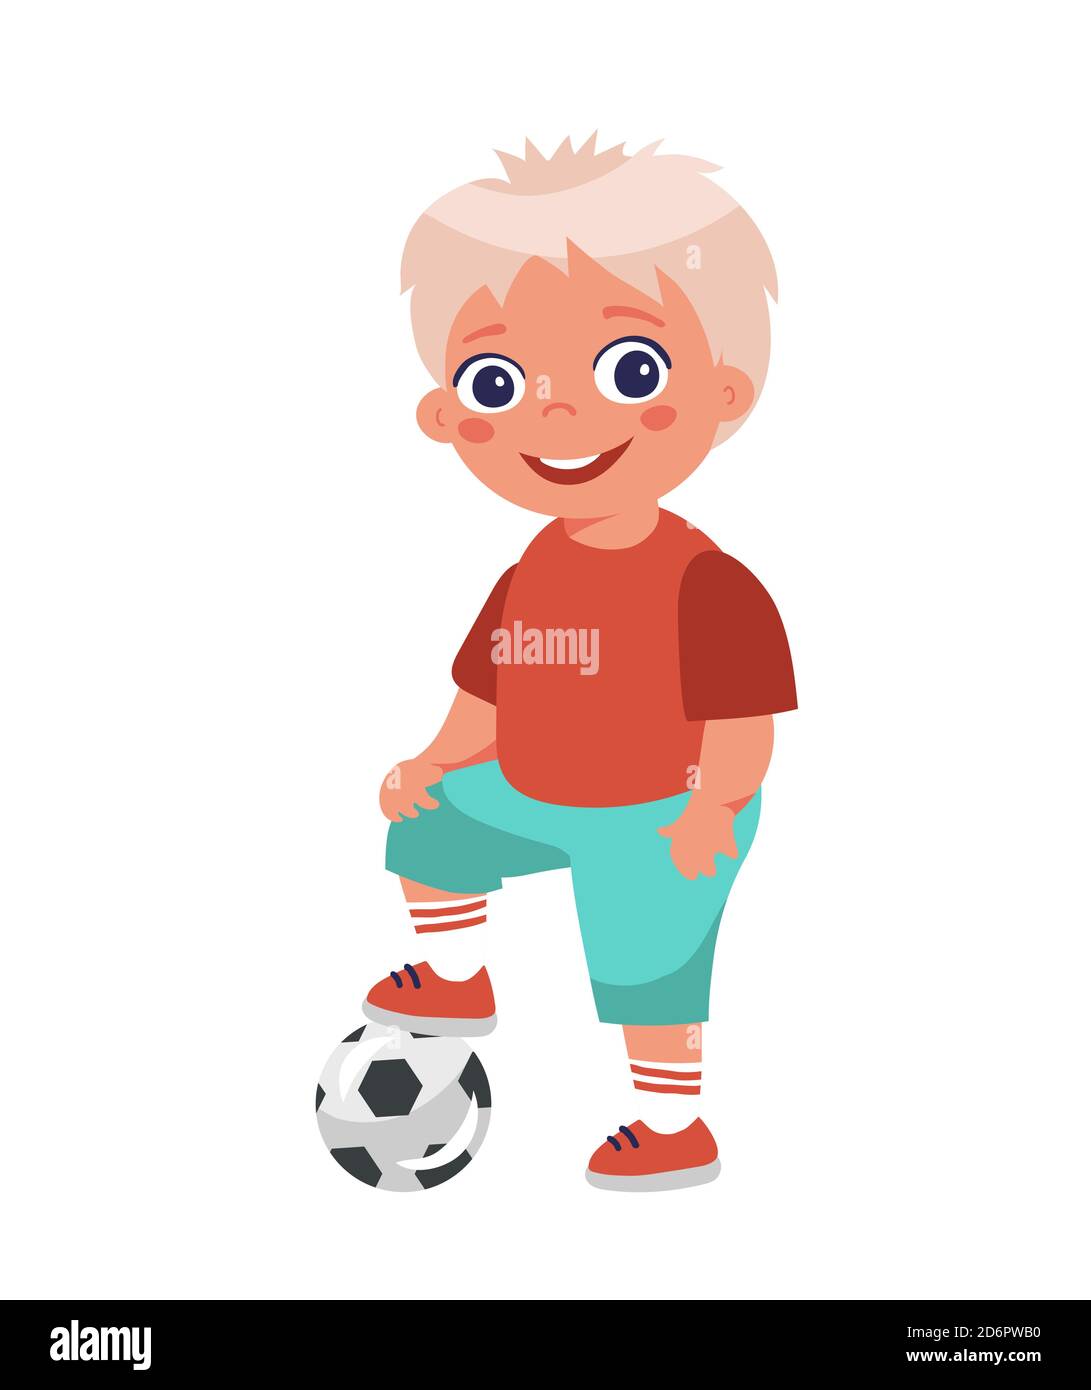 Junge Fußballspieler posiert legte seinen Fuß auf den Ball. Cartoon-Charakter auf weißem Hintergrund isoliert. Junger Fußballspieler in Shorts. Flaches Design Stock Vektor